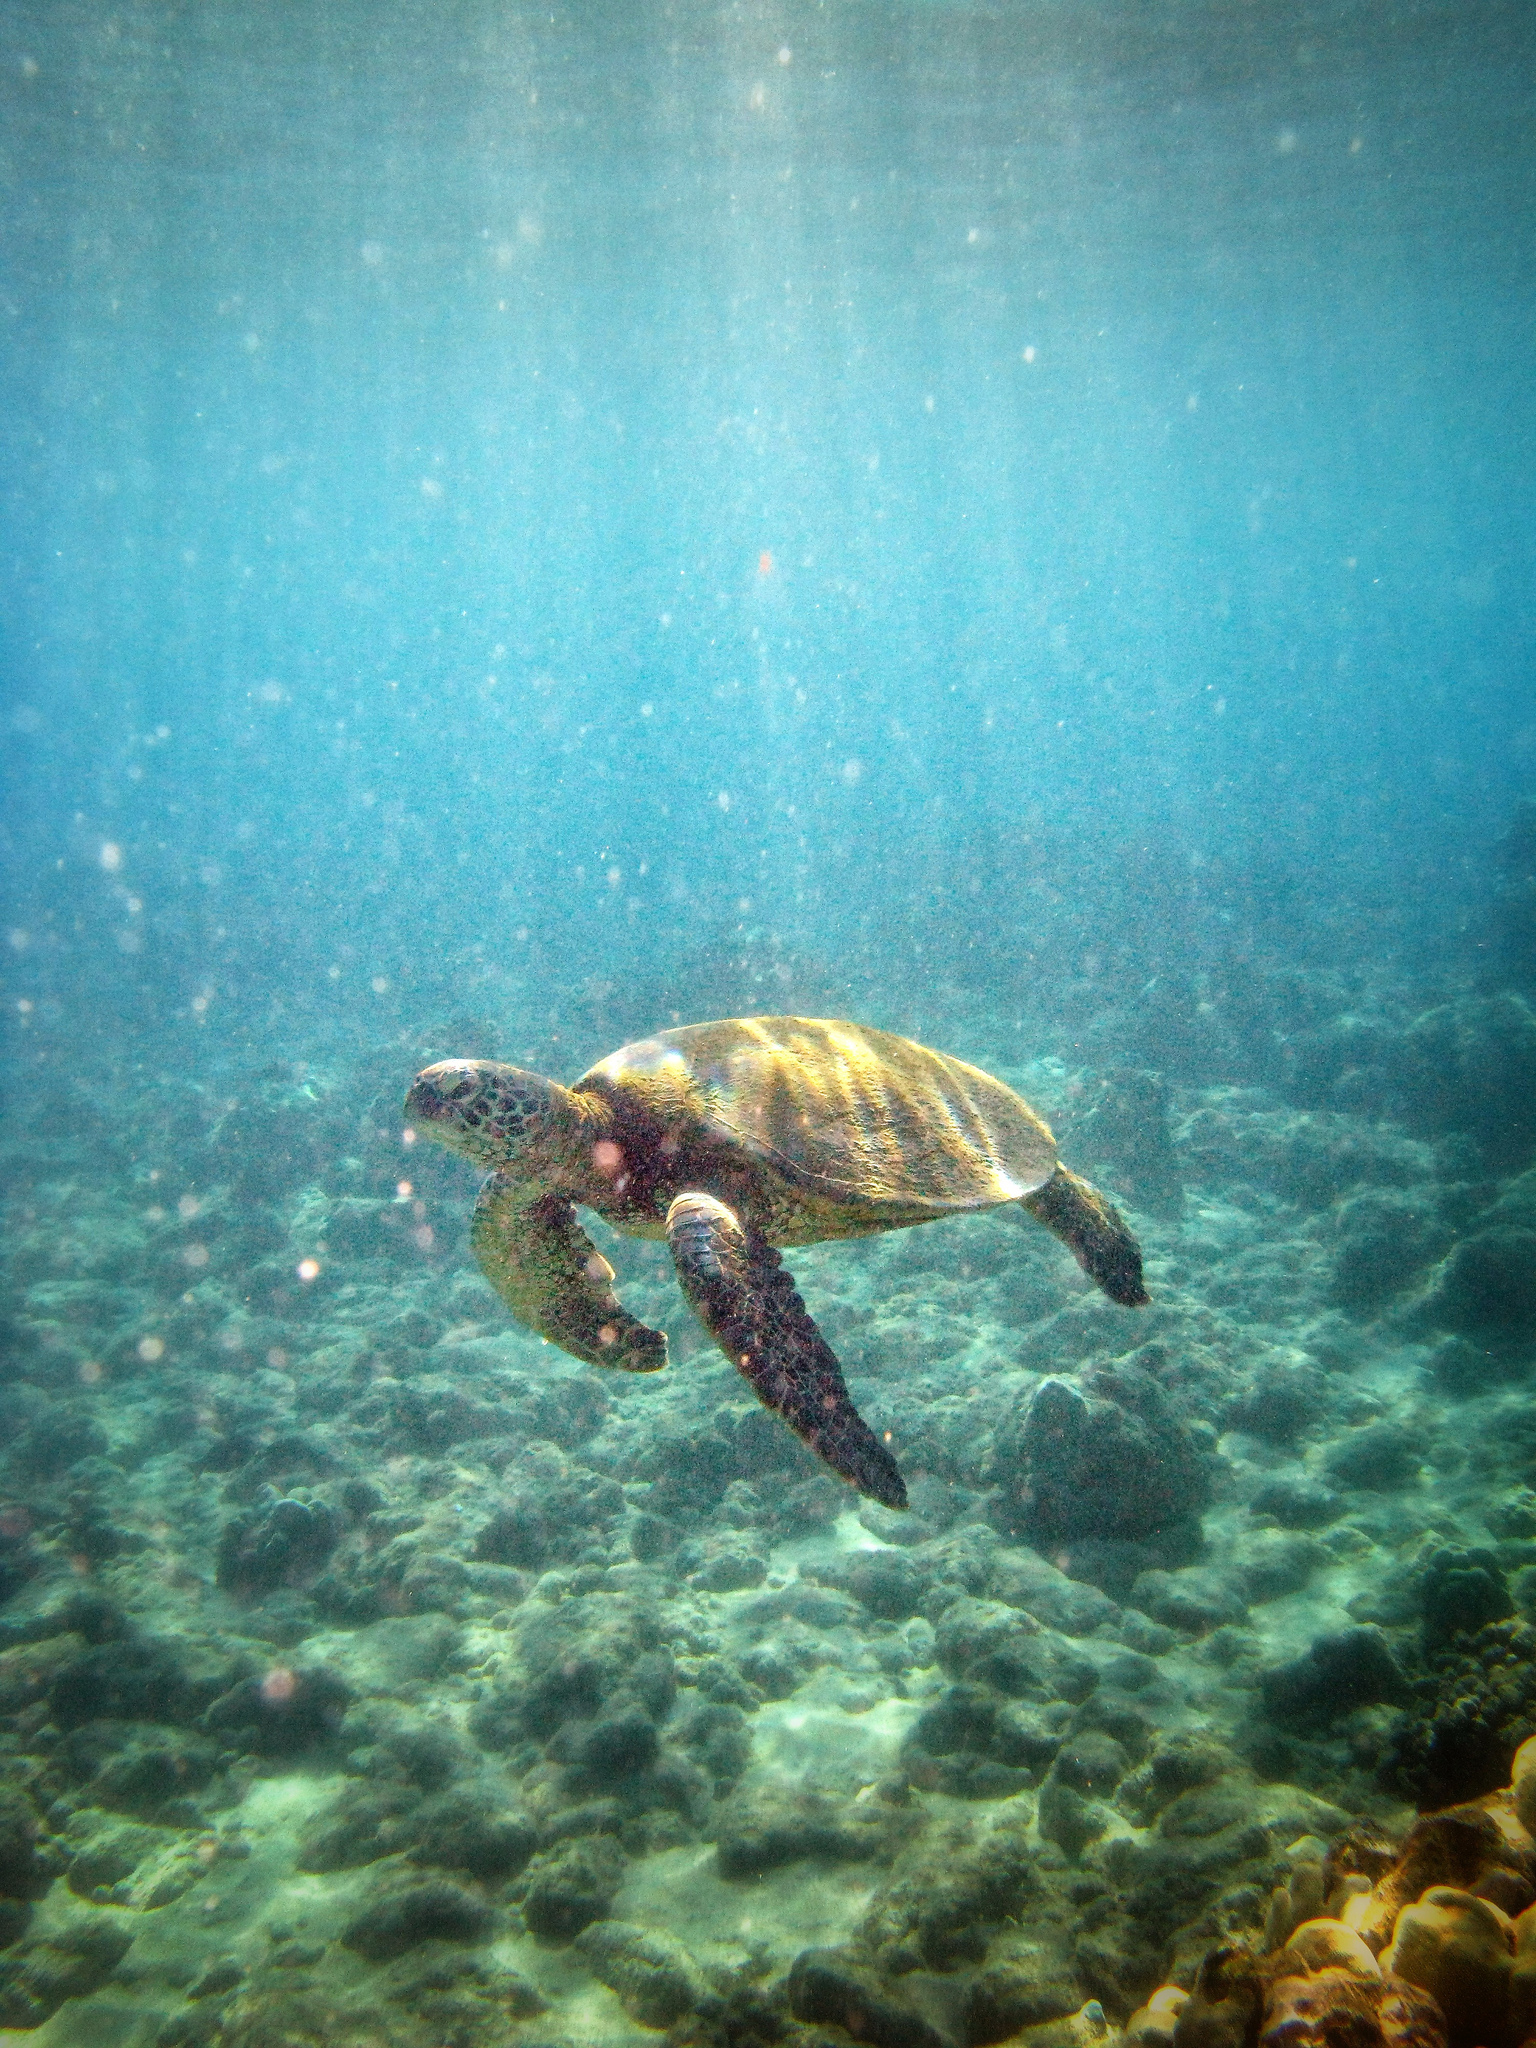 Swimming with Sea Turtles in Hawaii | Hawaiian Explorer